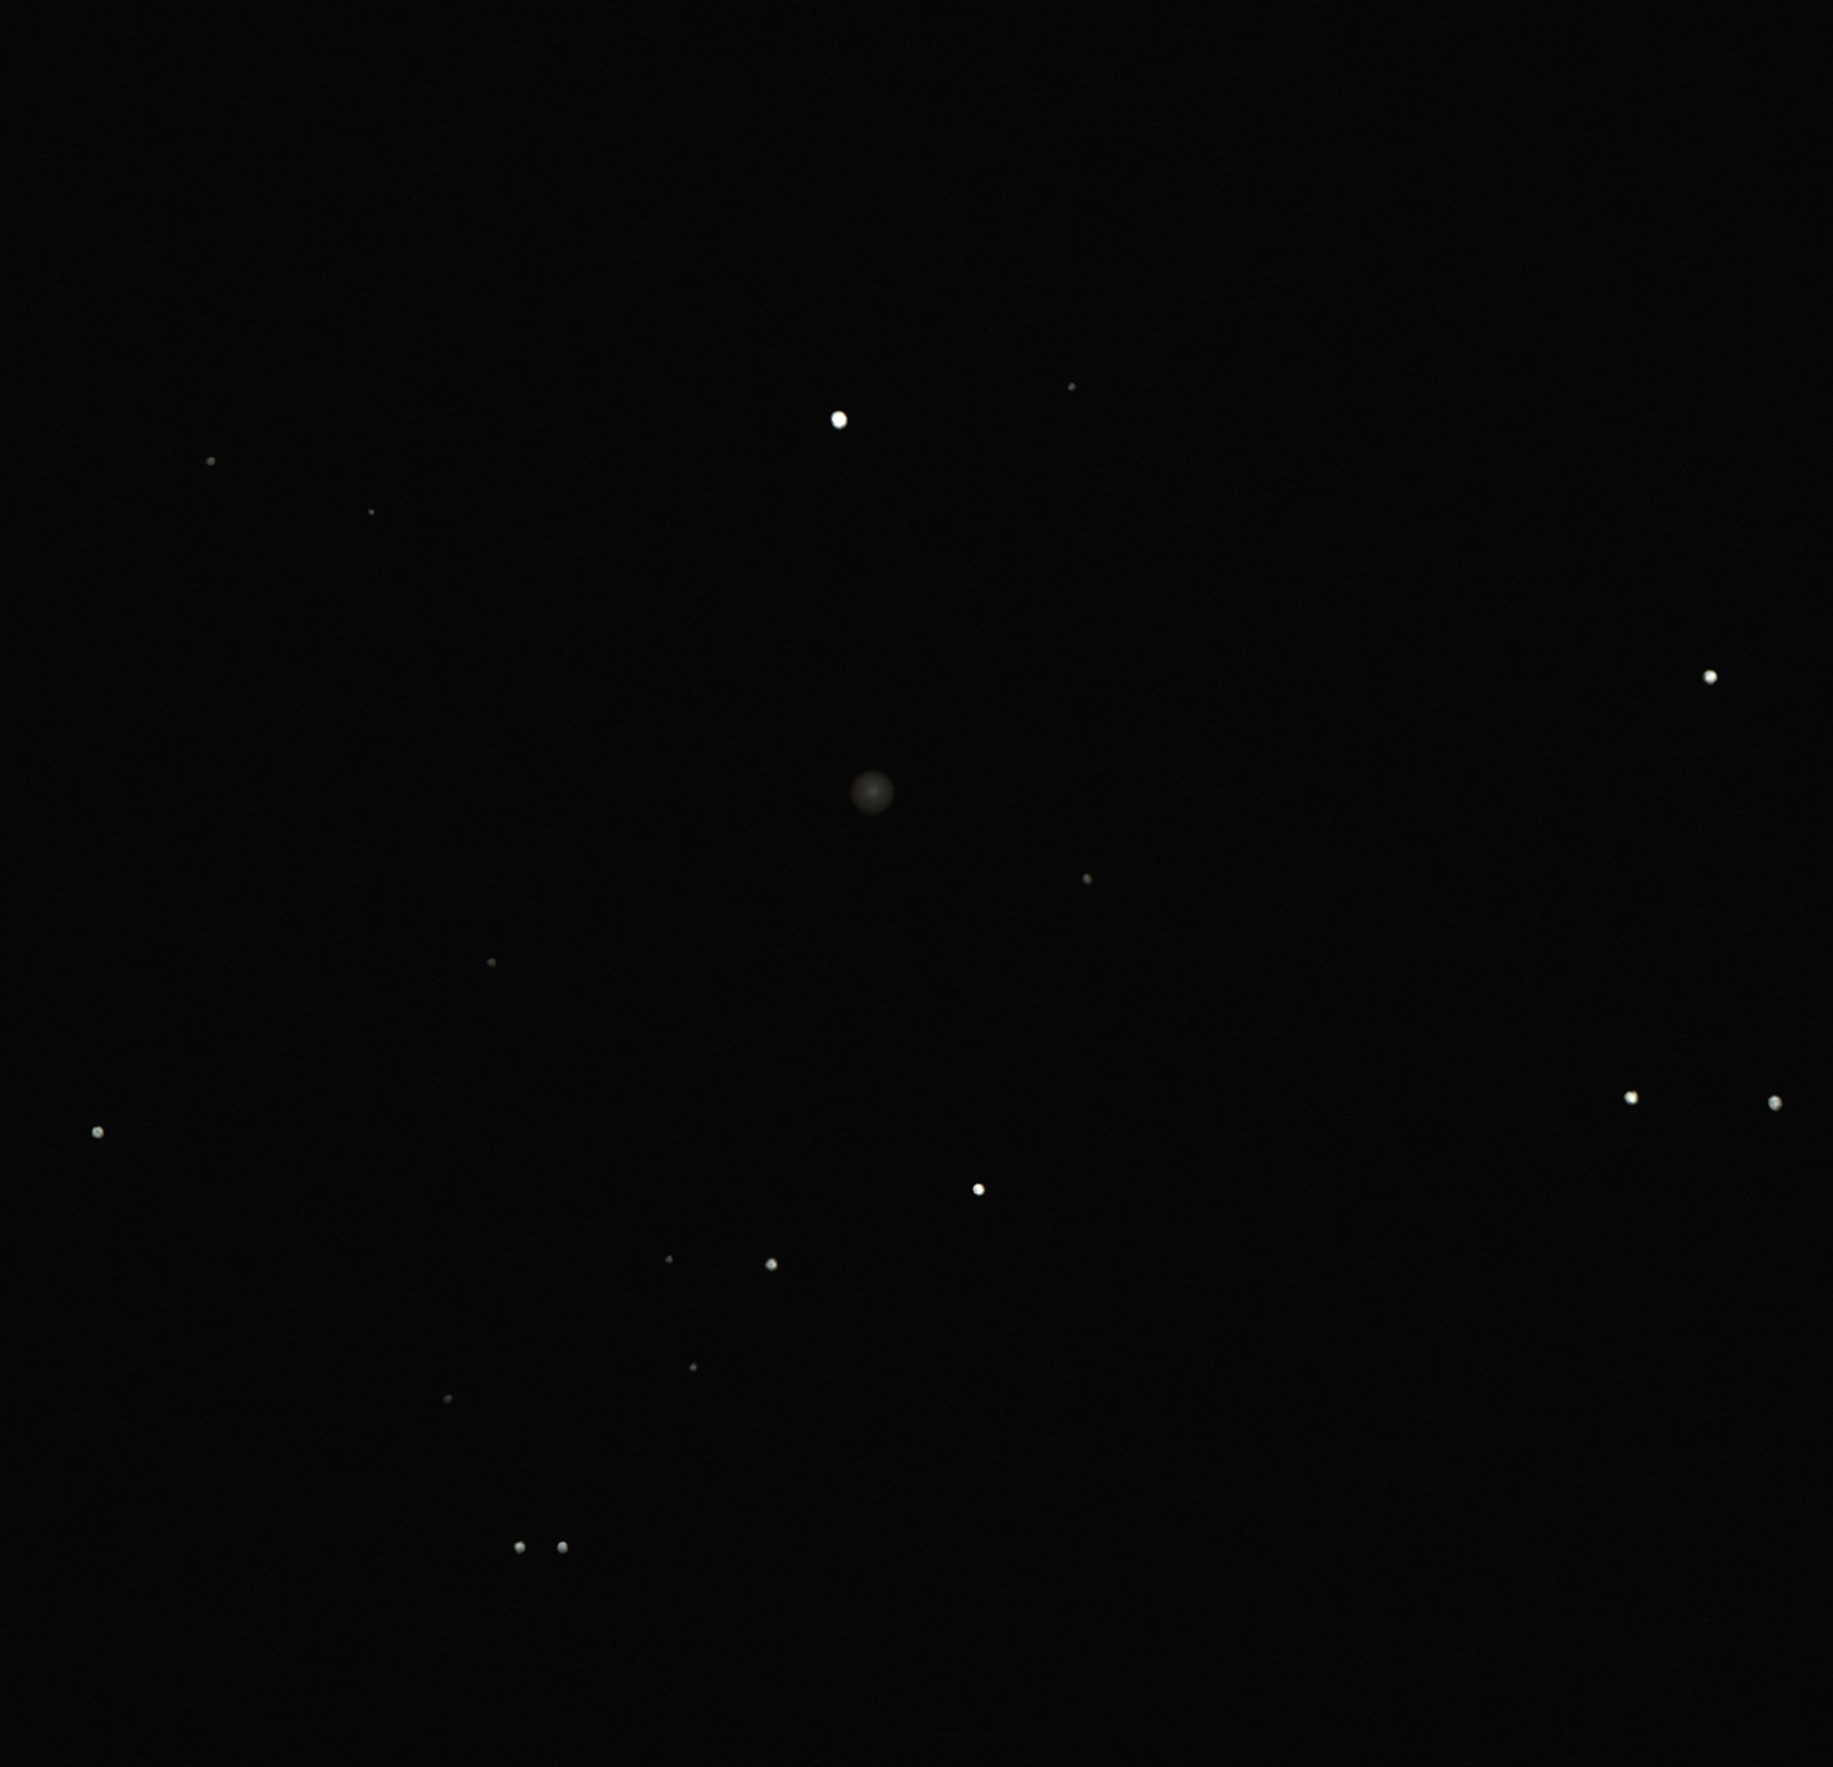 PK51-3.1 (Mi1-73) planetary nebula